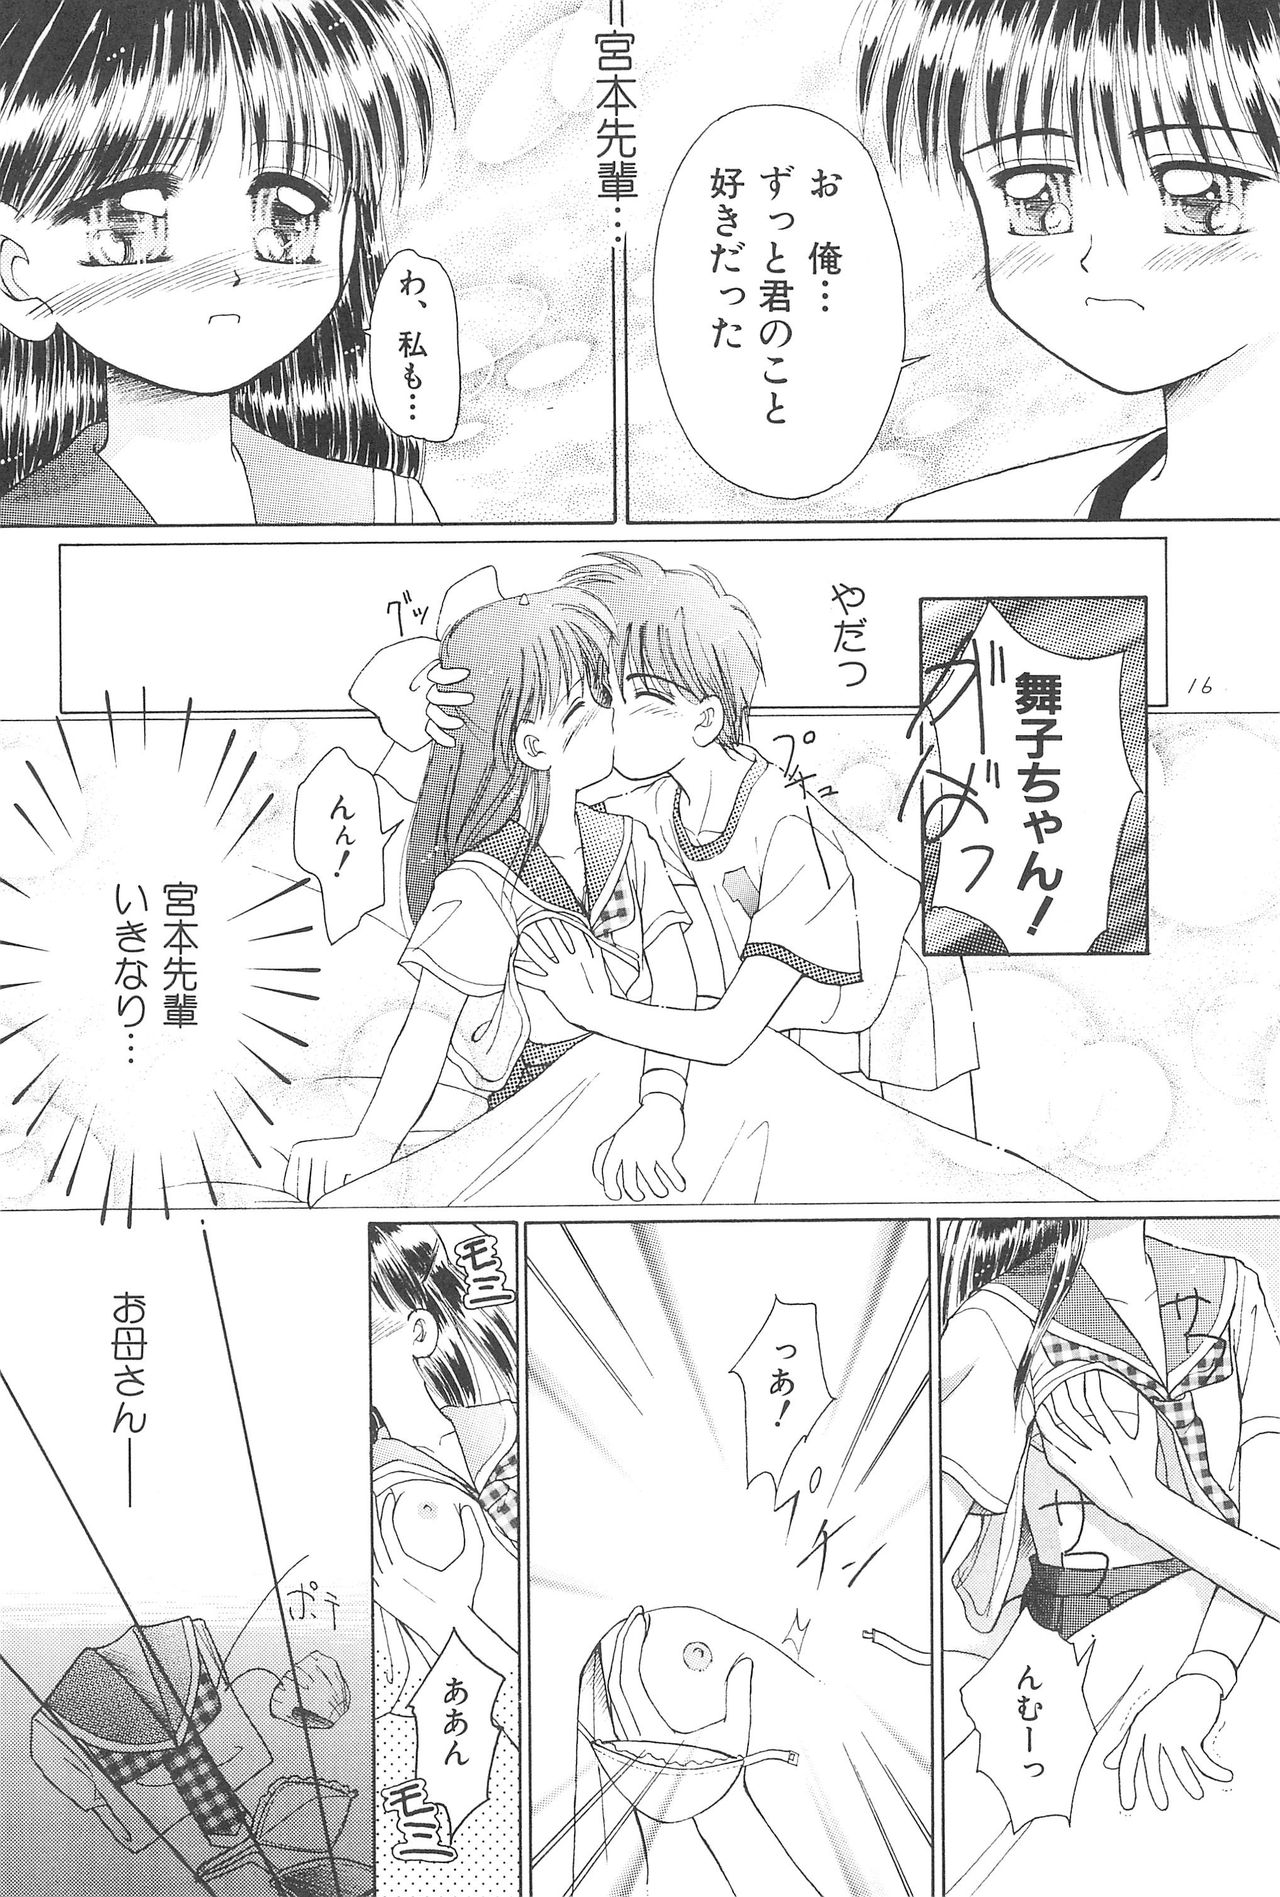 (CR23) [PHOENIX PROJECT (Kamikaze Makoto)] Okosama Lunch Original 1 page 18 full